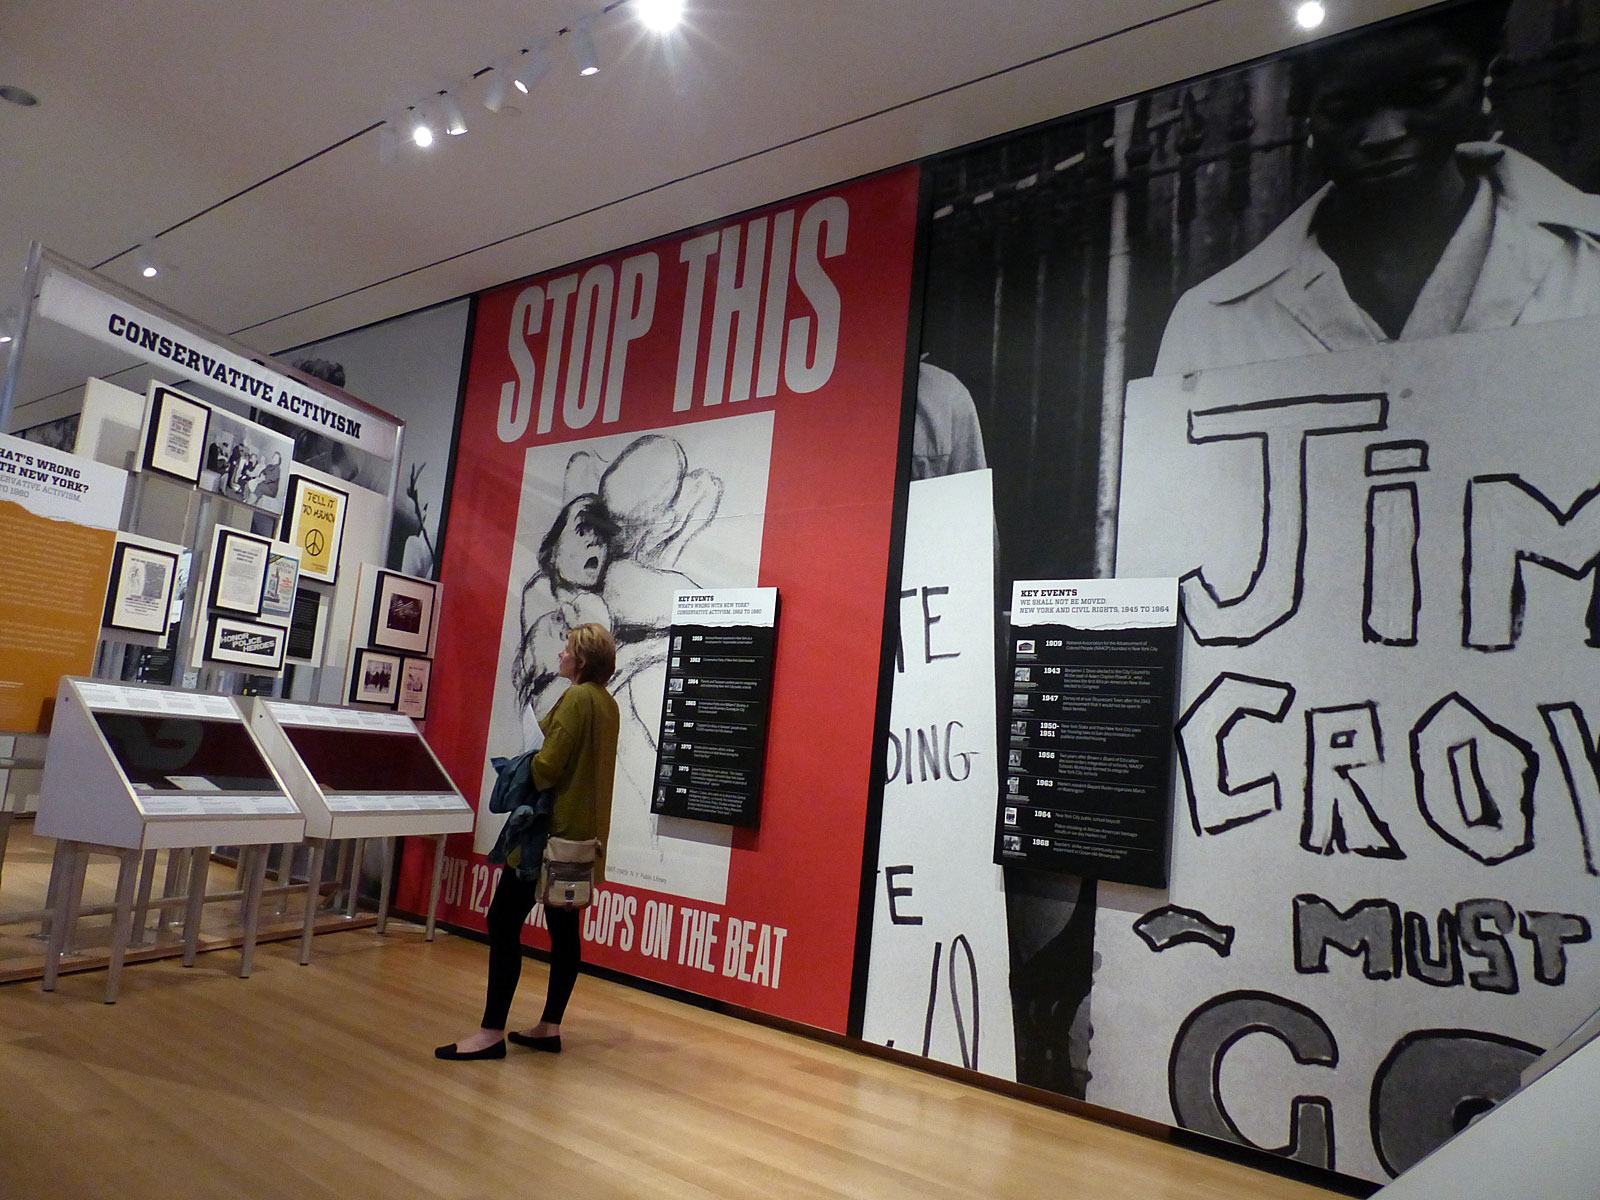 La photographie est tirée de l'exposition Activist New York. Les sections illustrées sur la photo proviennent de la galerie, sous les sections Droits civiques et Activisme conservateur à New York.